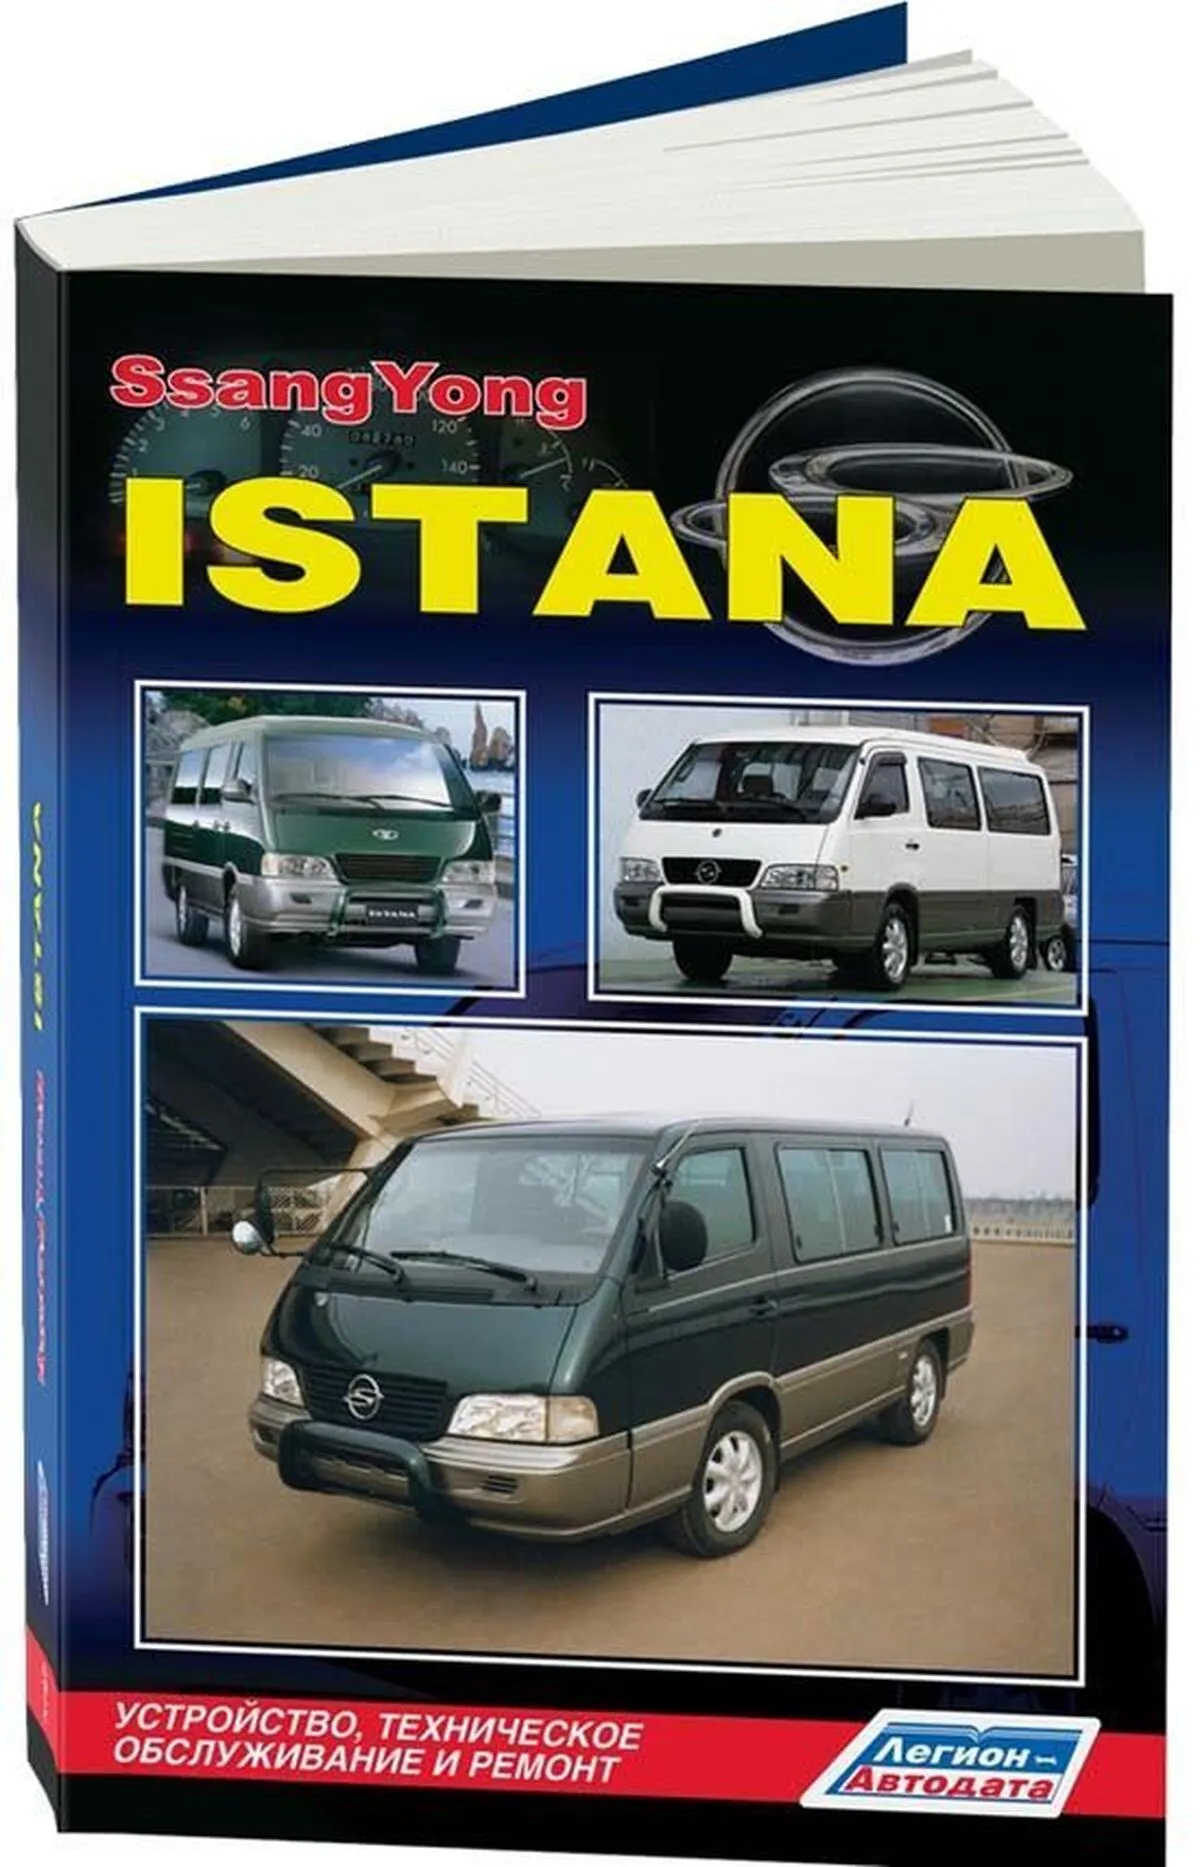 Книга: SSANG YONG ISTANA (д) с 1995 г.в., рем.,  экспл., то | Легион-Aвтодата